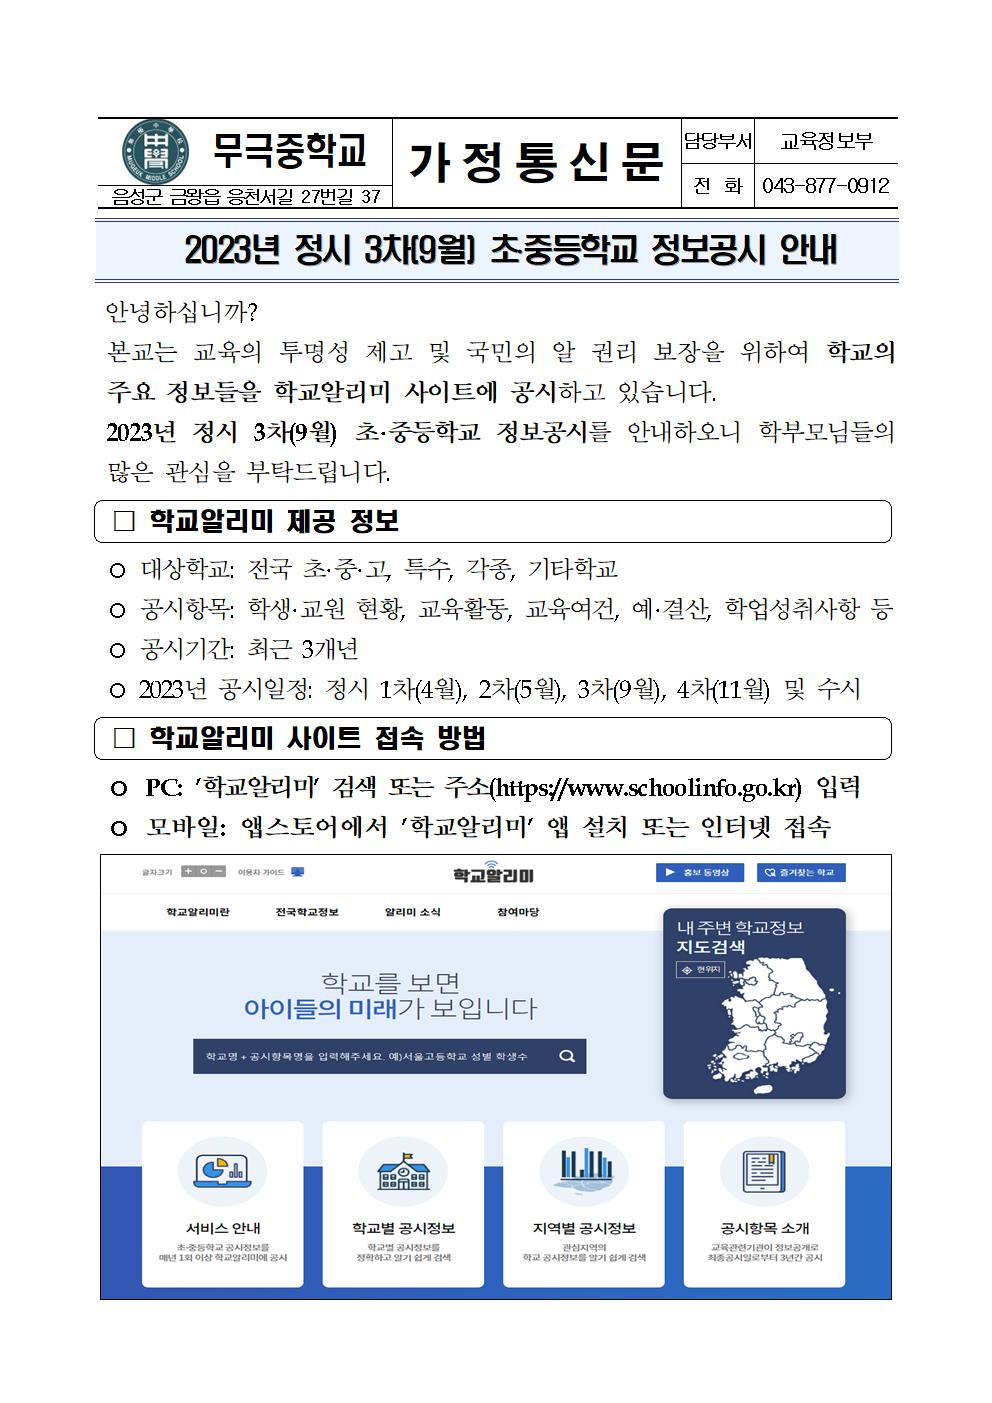 2023년 정시3차(9월) 정보공시 안내 가정통신문001